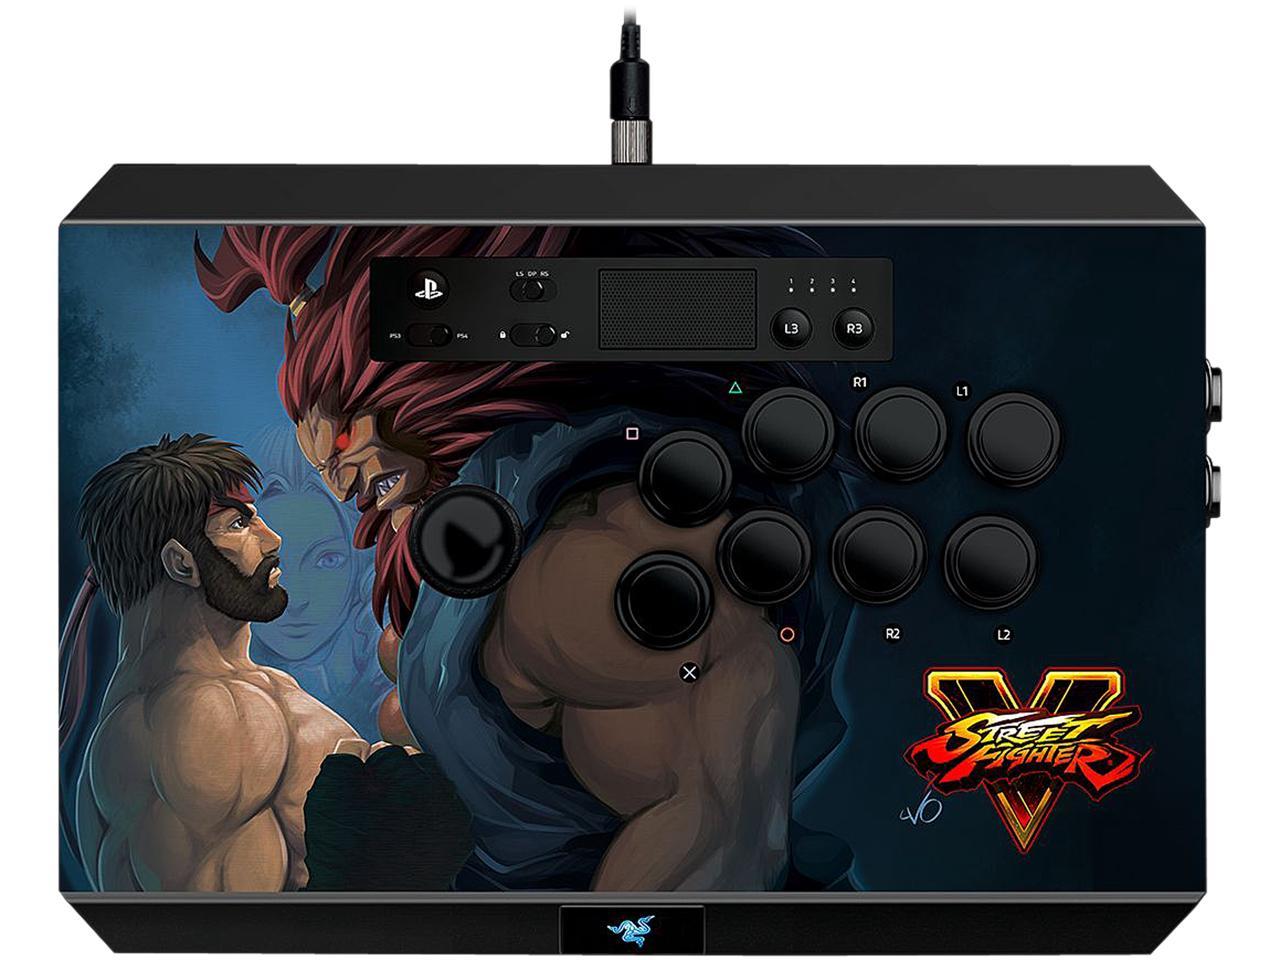 Razer Panthera Street Fighter V Arcade Stick - PlayStation 4 